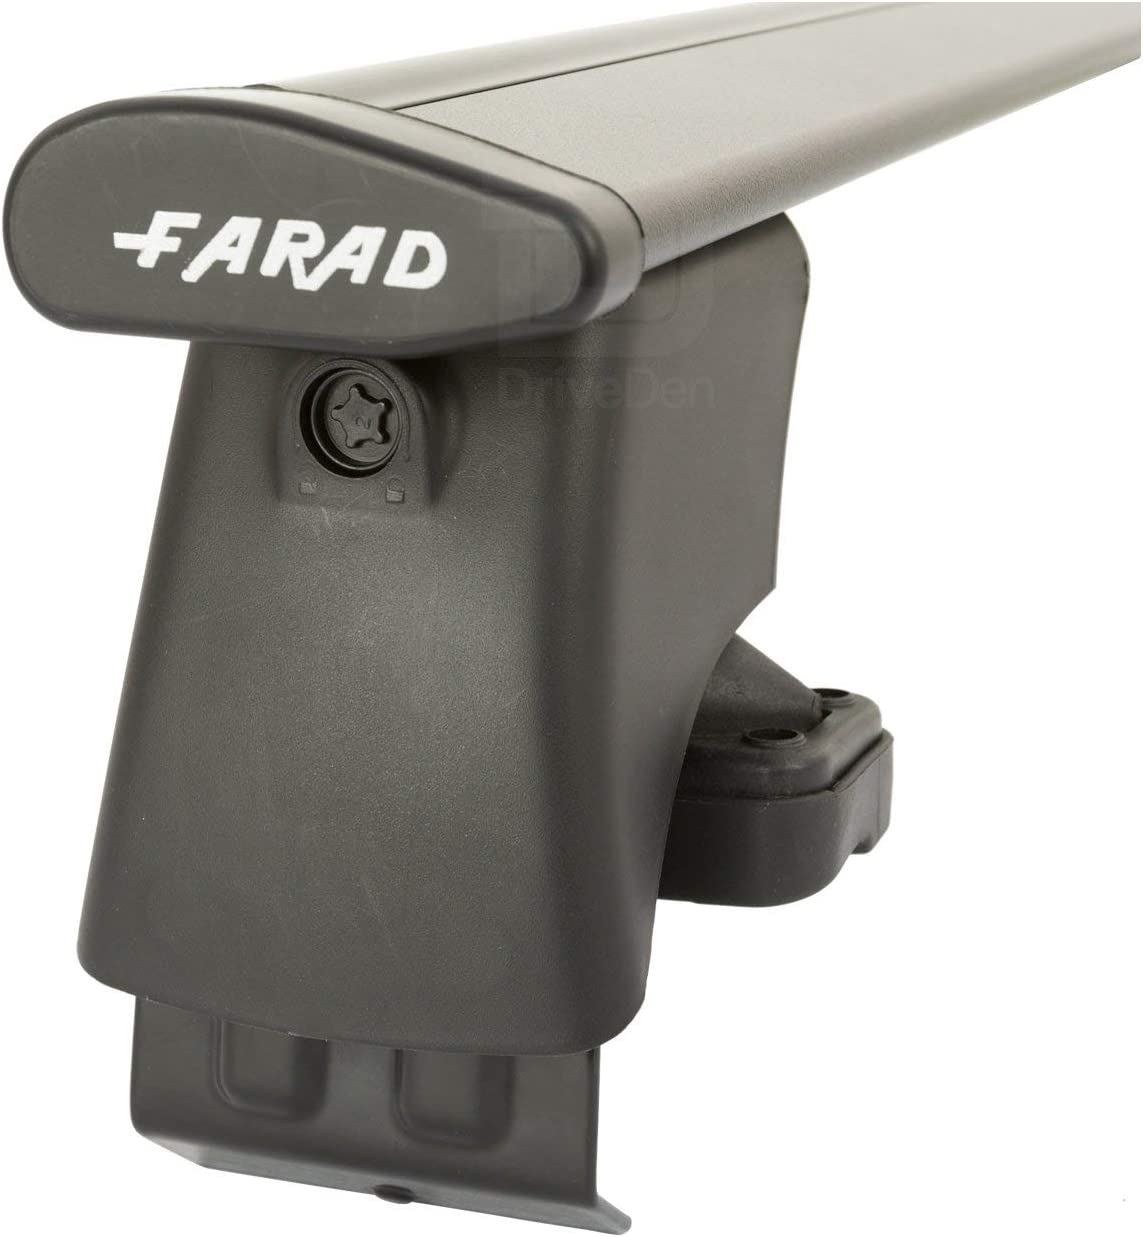 FARAD-Kit H2 per barre portatutto - Fiat Tipo 2016> (senza corrimano)